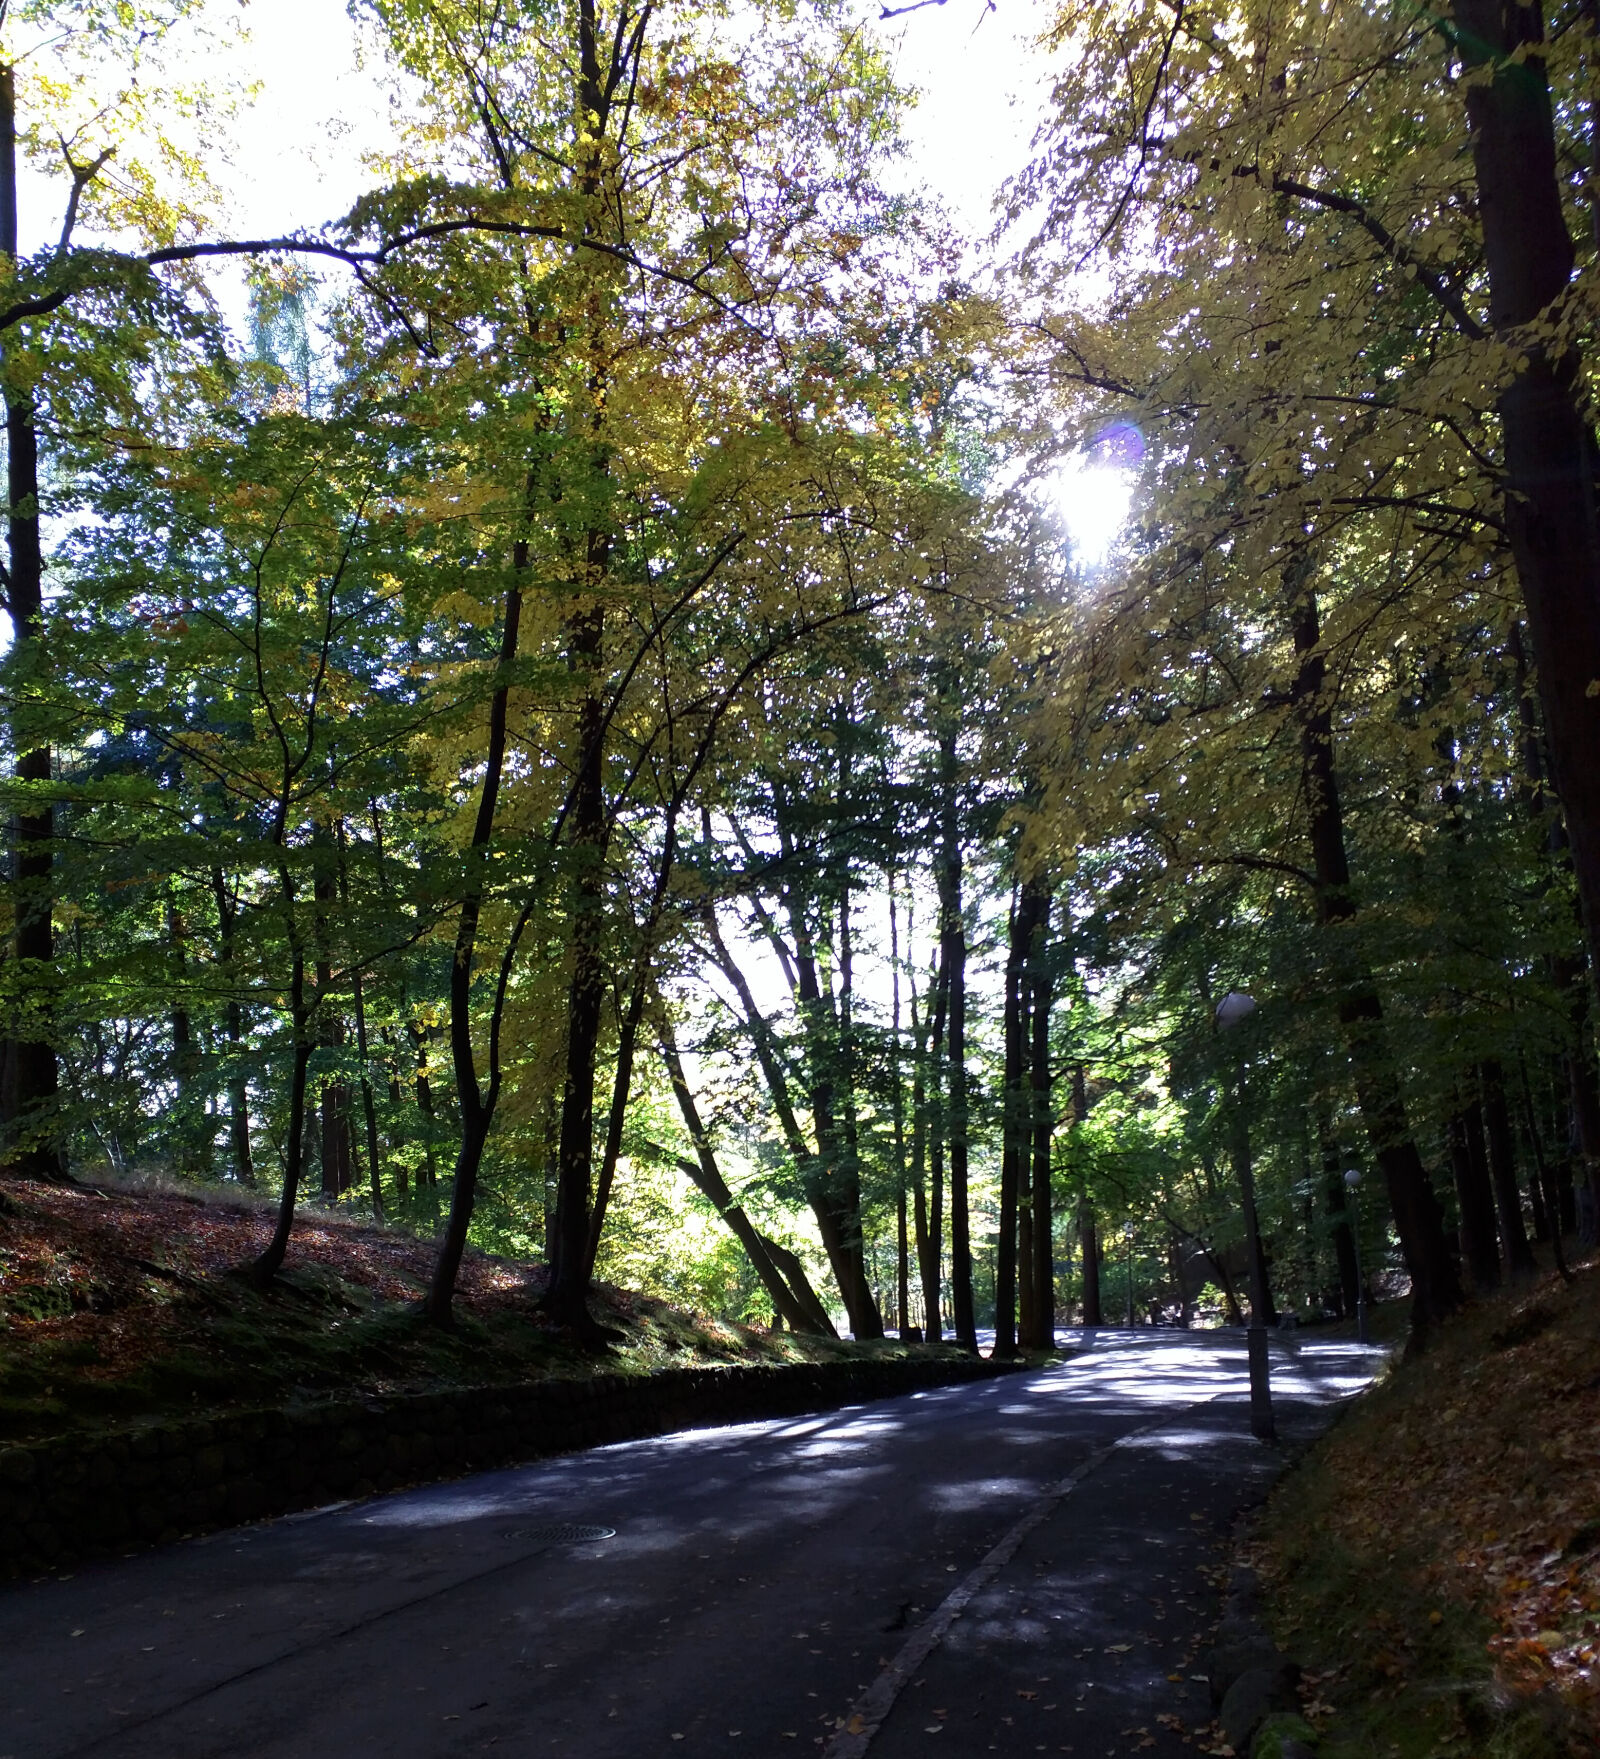 Motorola Nexus 6 sample photo. Autumn, road, sun, walkway photography